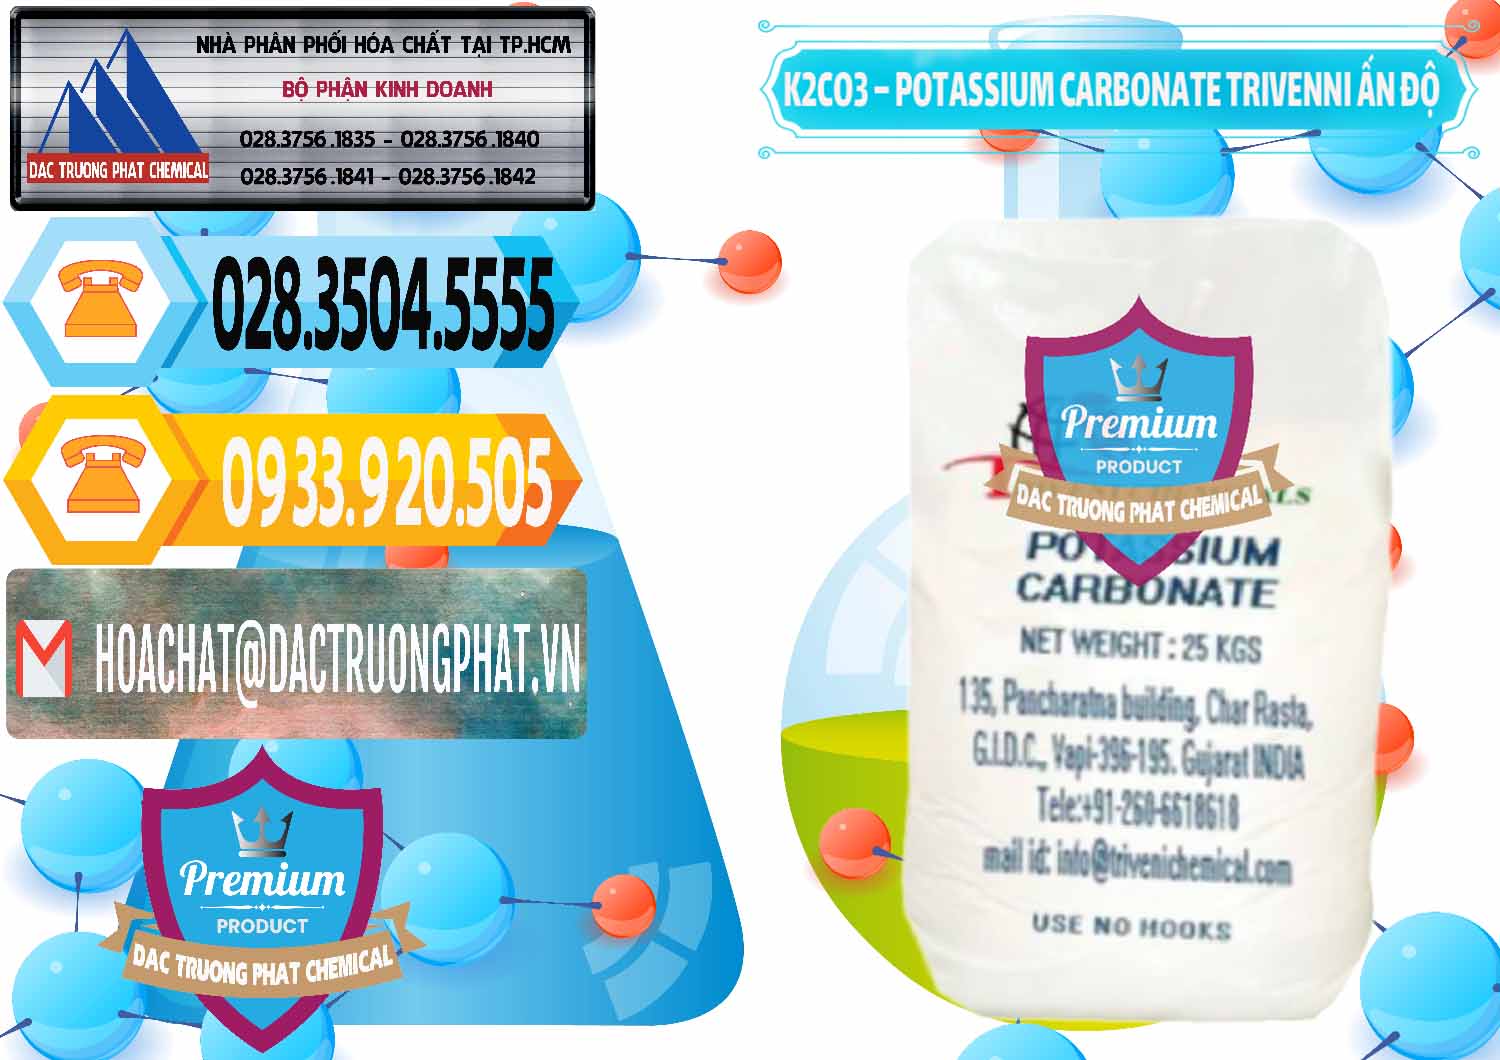 Cty chuyên phân phối _ bán K2Co3 – Potassium Carbonate Trivenni Ấn Độ India - 0473 - Kinh doanh - cung cấp hóa chất tại TP.HCM - hoachattayrua.net